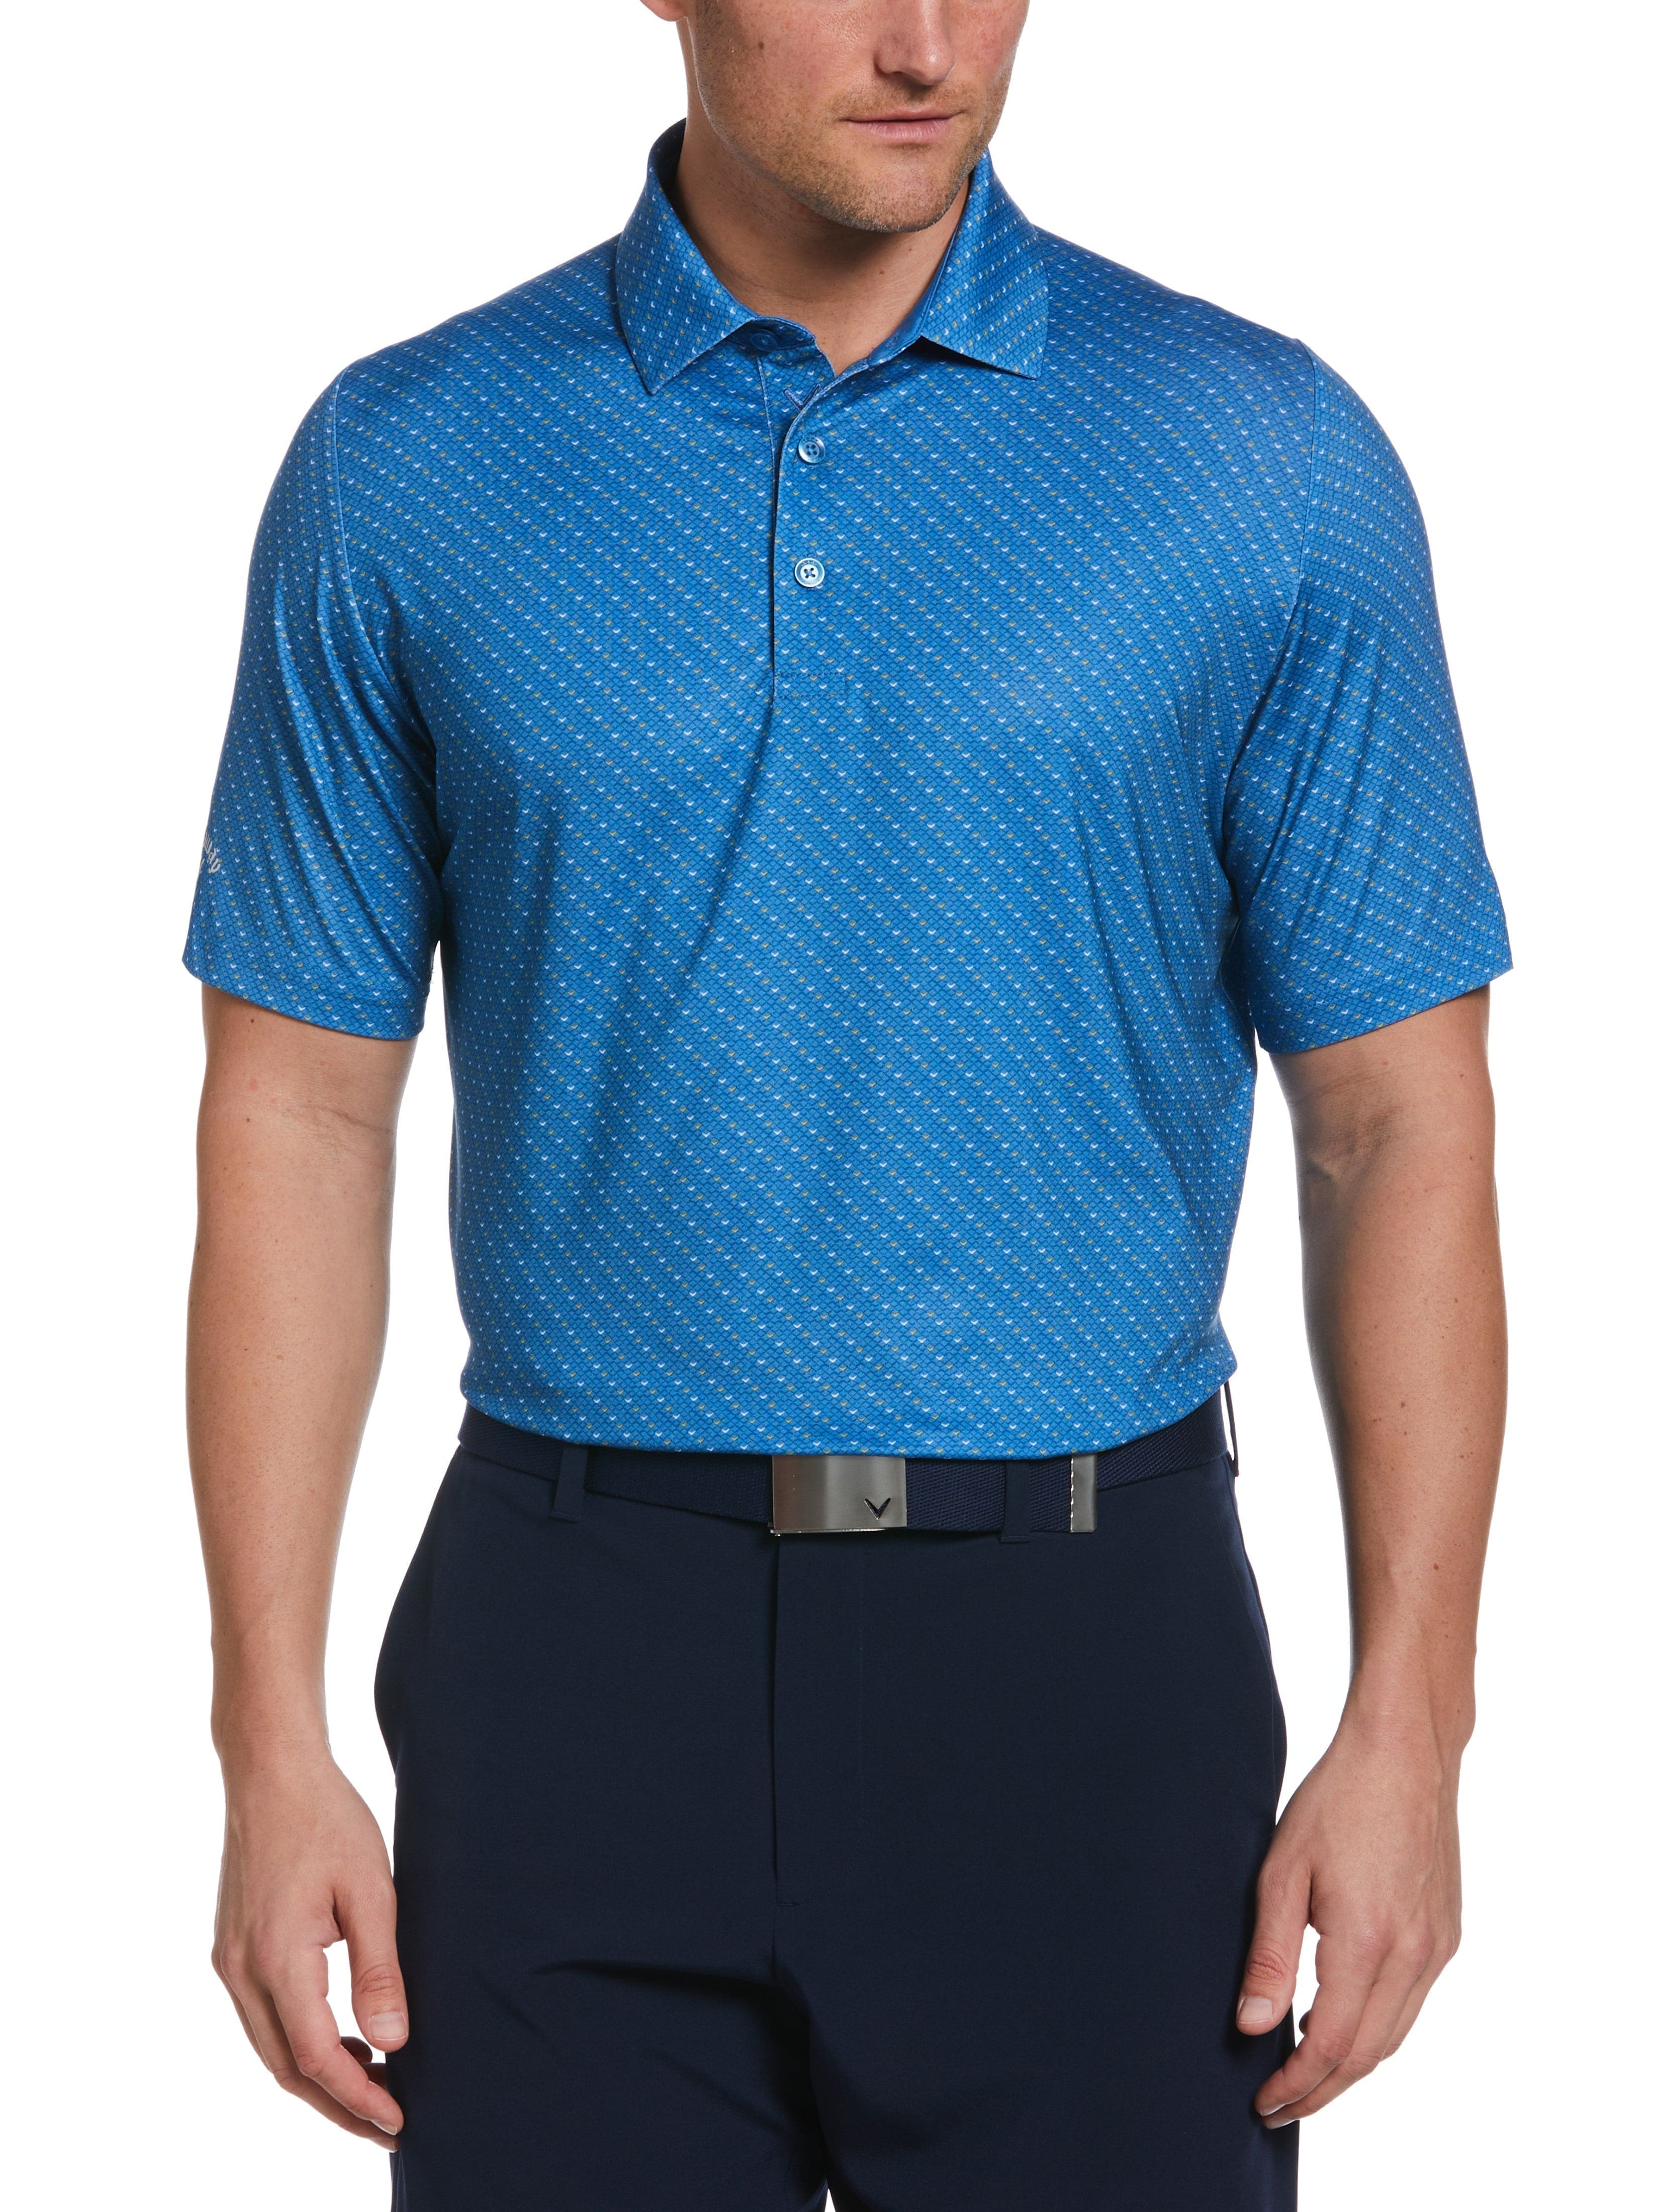 Callaway Apparel Mens Swing Tech Allover Chevron Golf Polo Shirt, Size Small, Vallarta Blue, Polyester/Elastane | Golf Apparel Shop